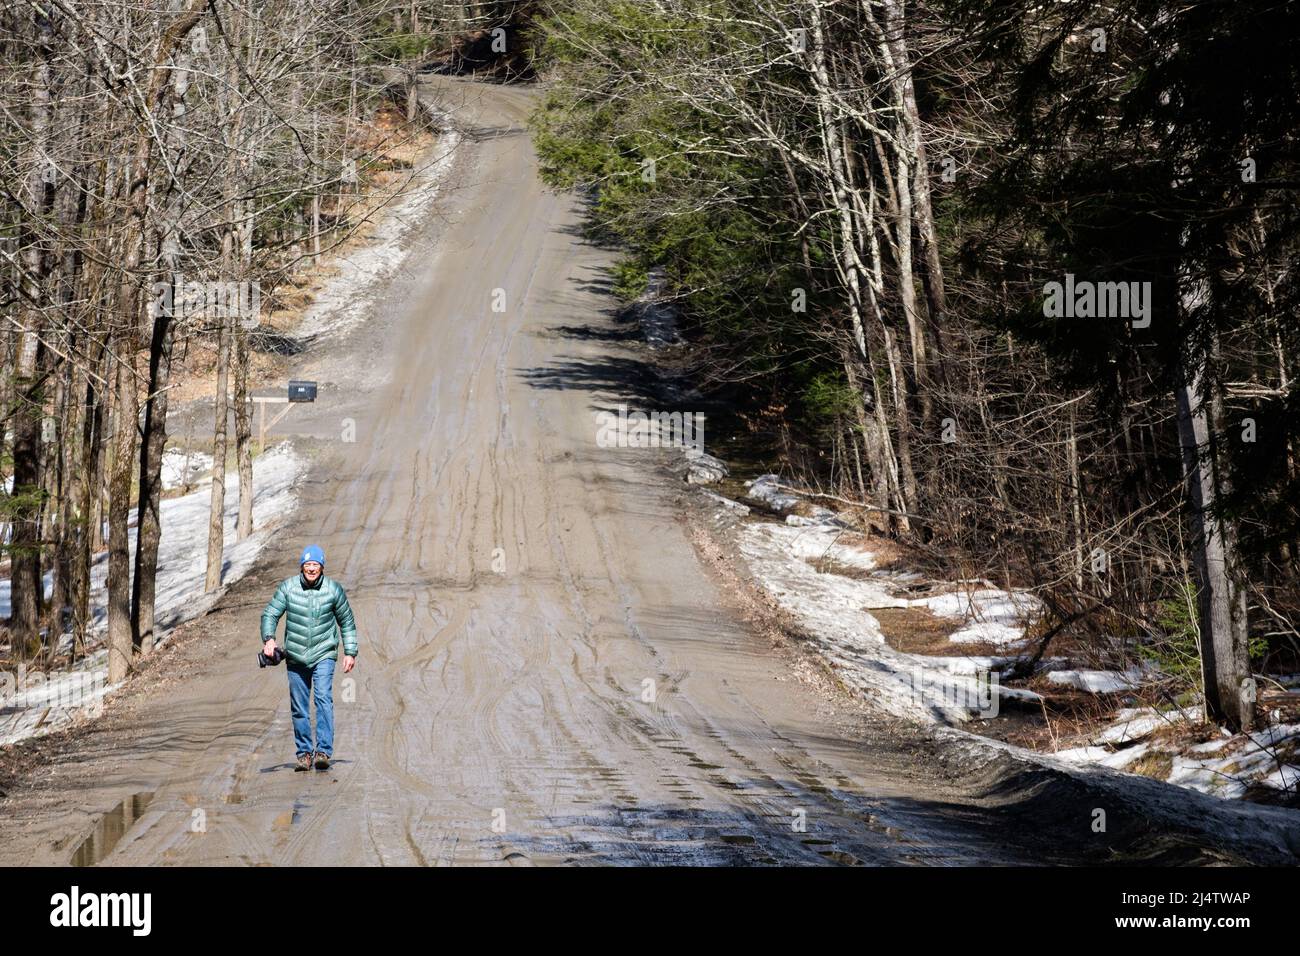 Un seul marcheur en saison de boue, la descente des routes de terre du Vermont dans les marais de boue, se produit chaque printemps, habituellement en mars et avril. Etat du Vermont, Etats-Unis. Banque D'Images